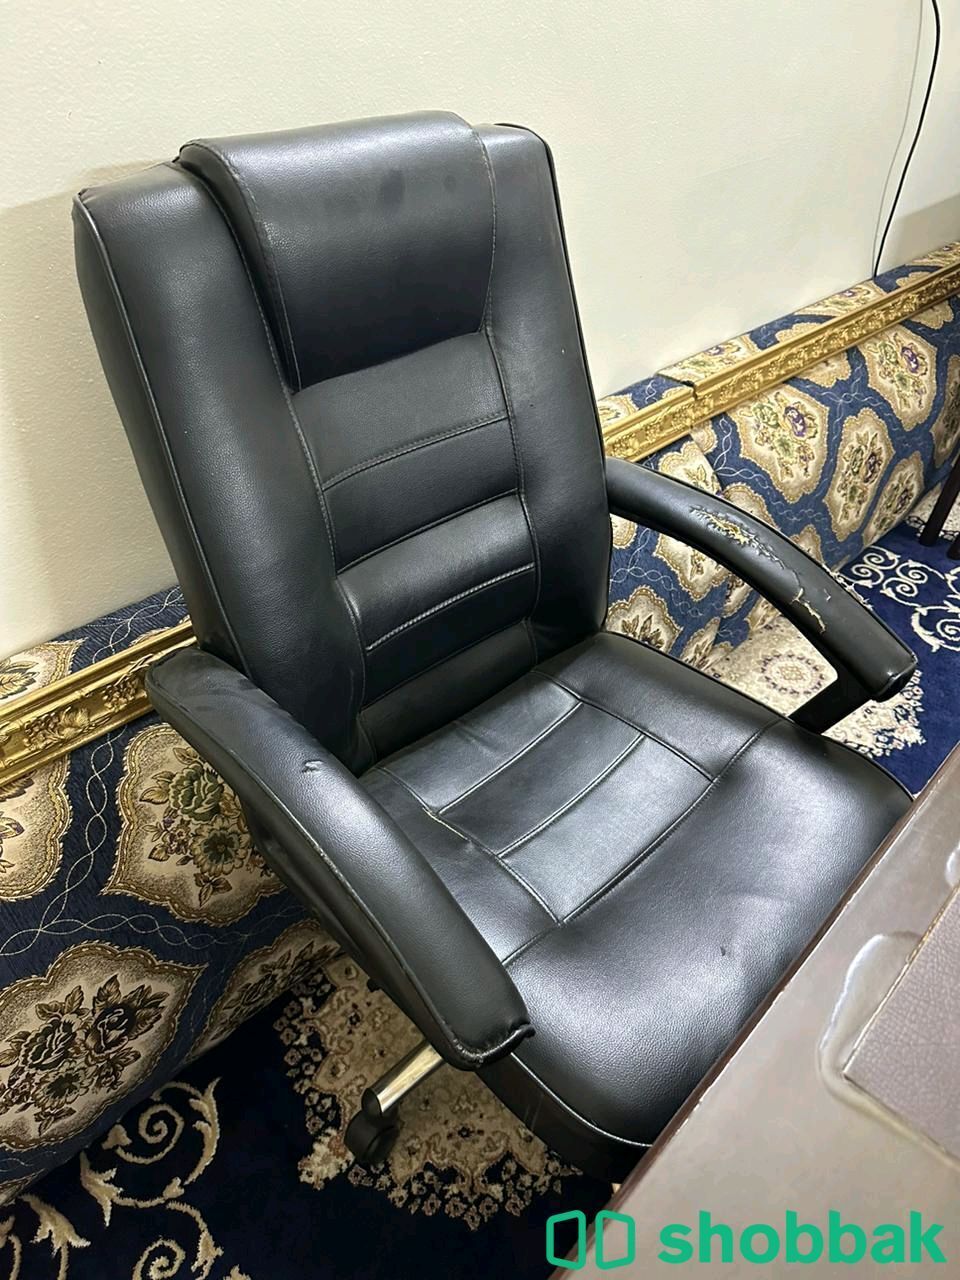 مكتب سكرتارية مع كرسي Shobbak Saudi Arabia